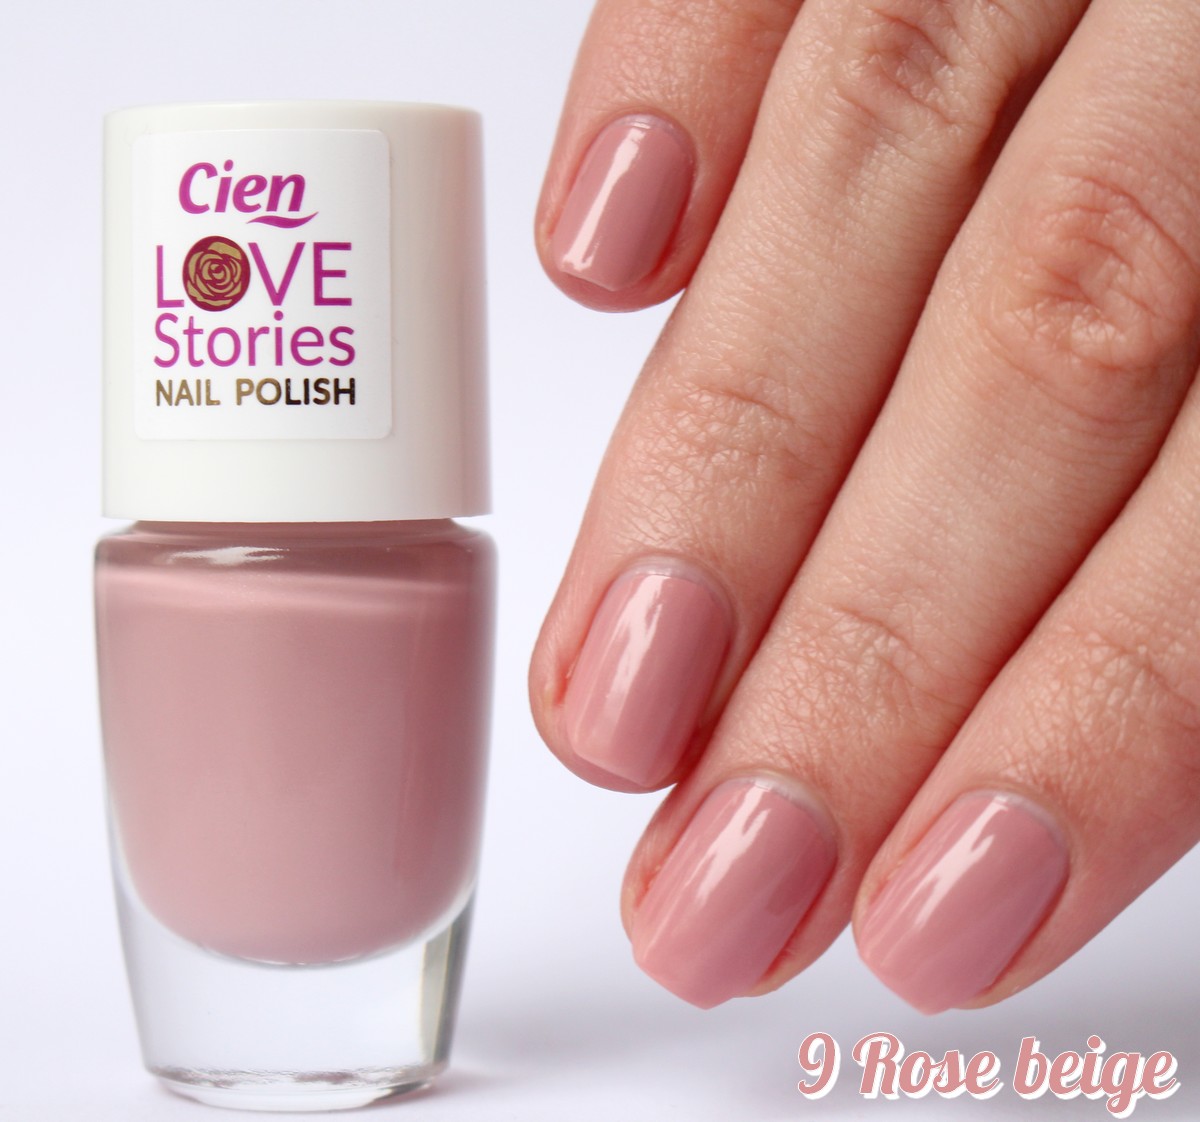 vernis-lidl-cien-love-stories-9-rose-beige